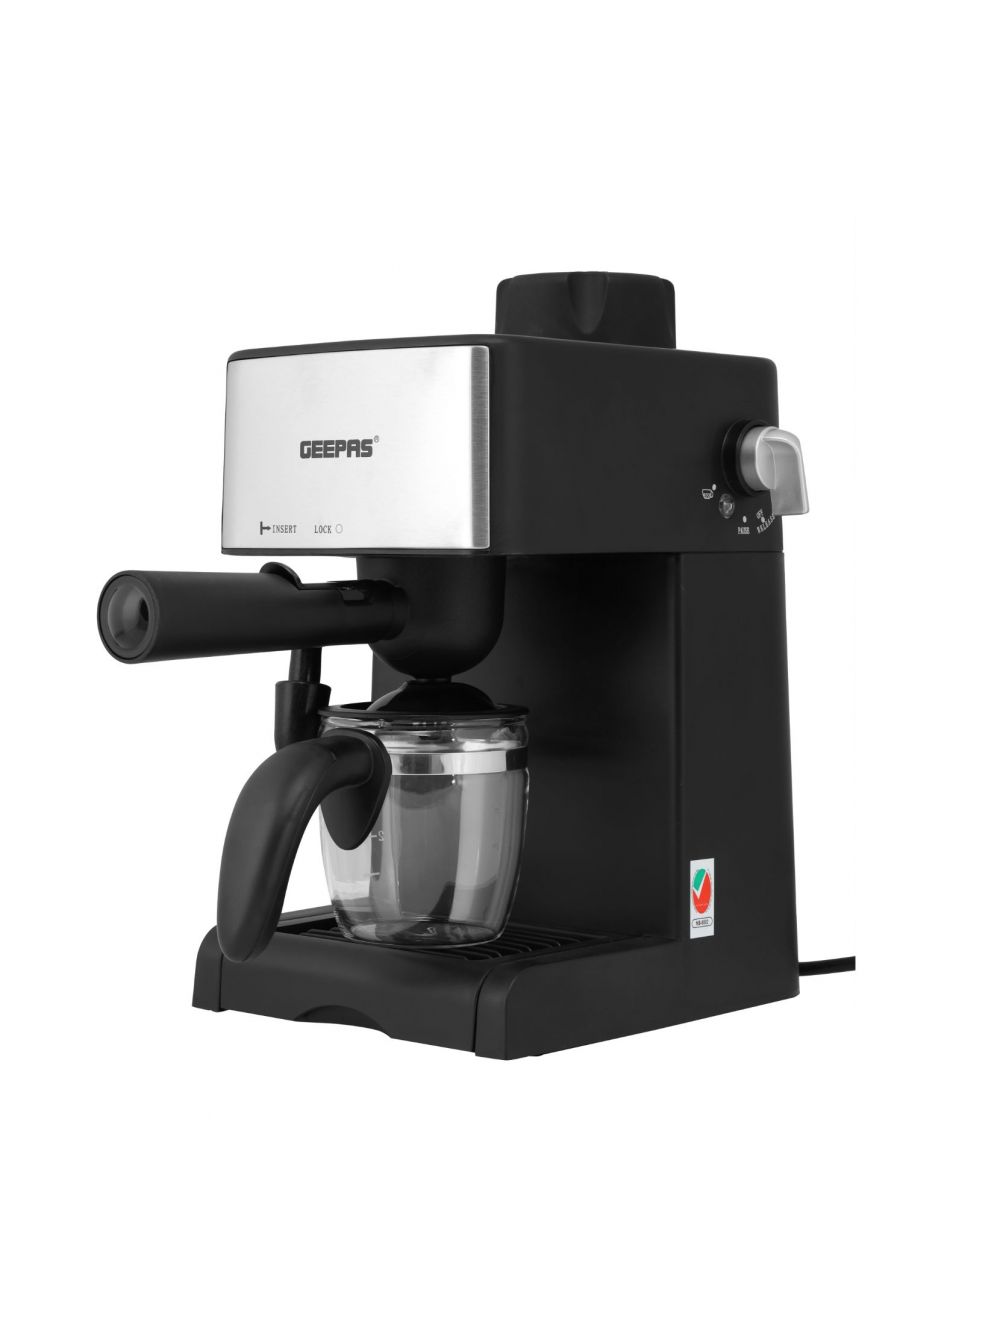 Geepas Powder Espresso Machine, Black - GCM6109